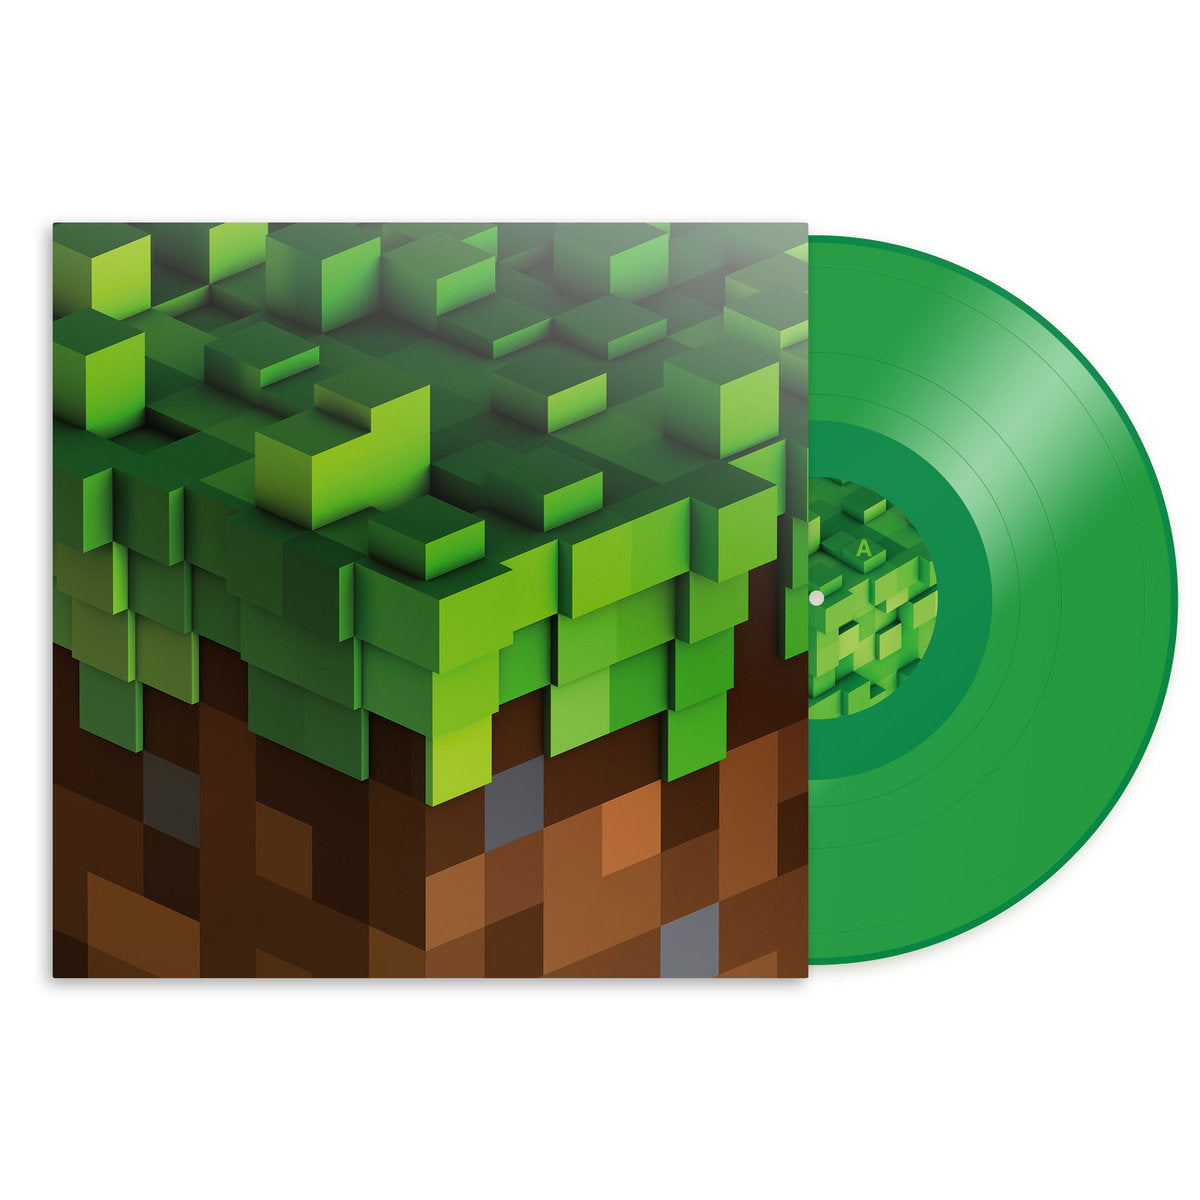 C418 – Minecraft Volume Alpha LP (Green Vinyl)